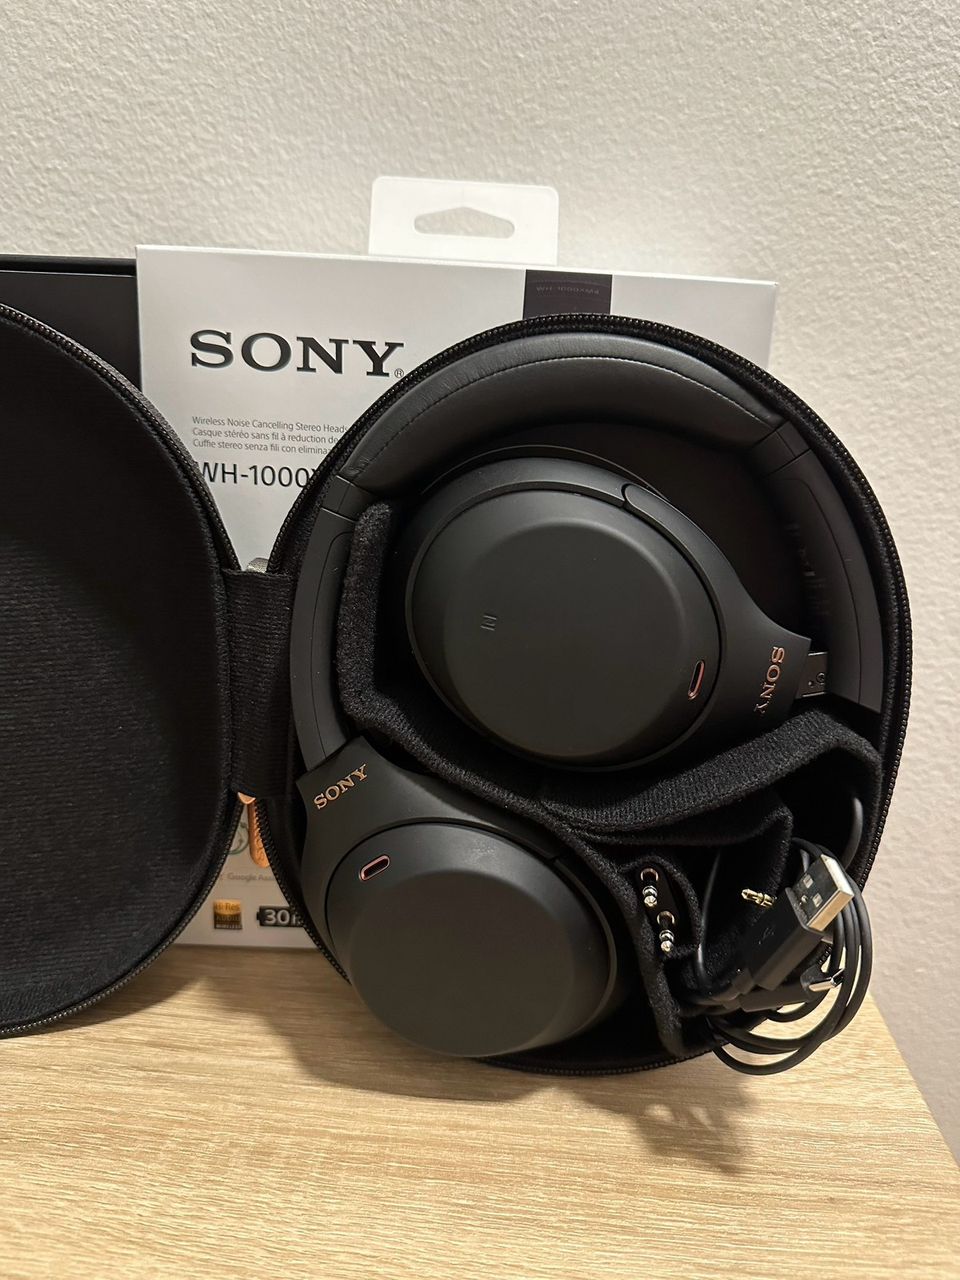 Sony WH-1000xm4